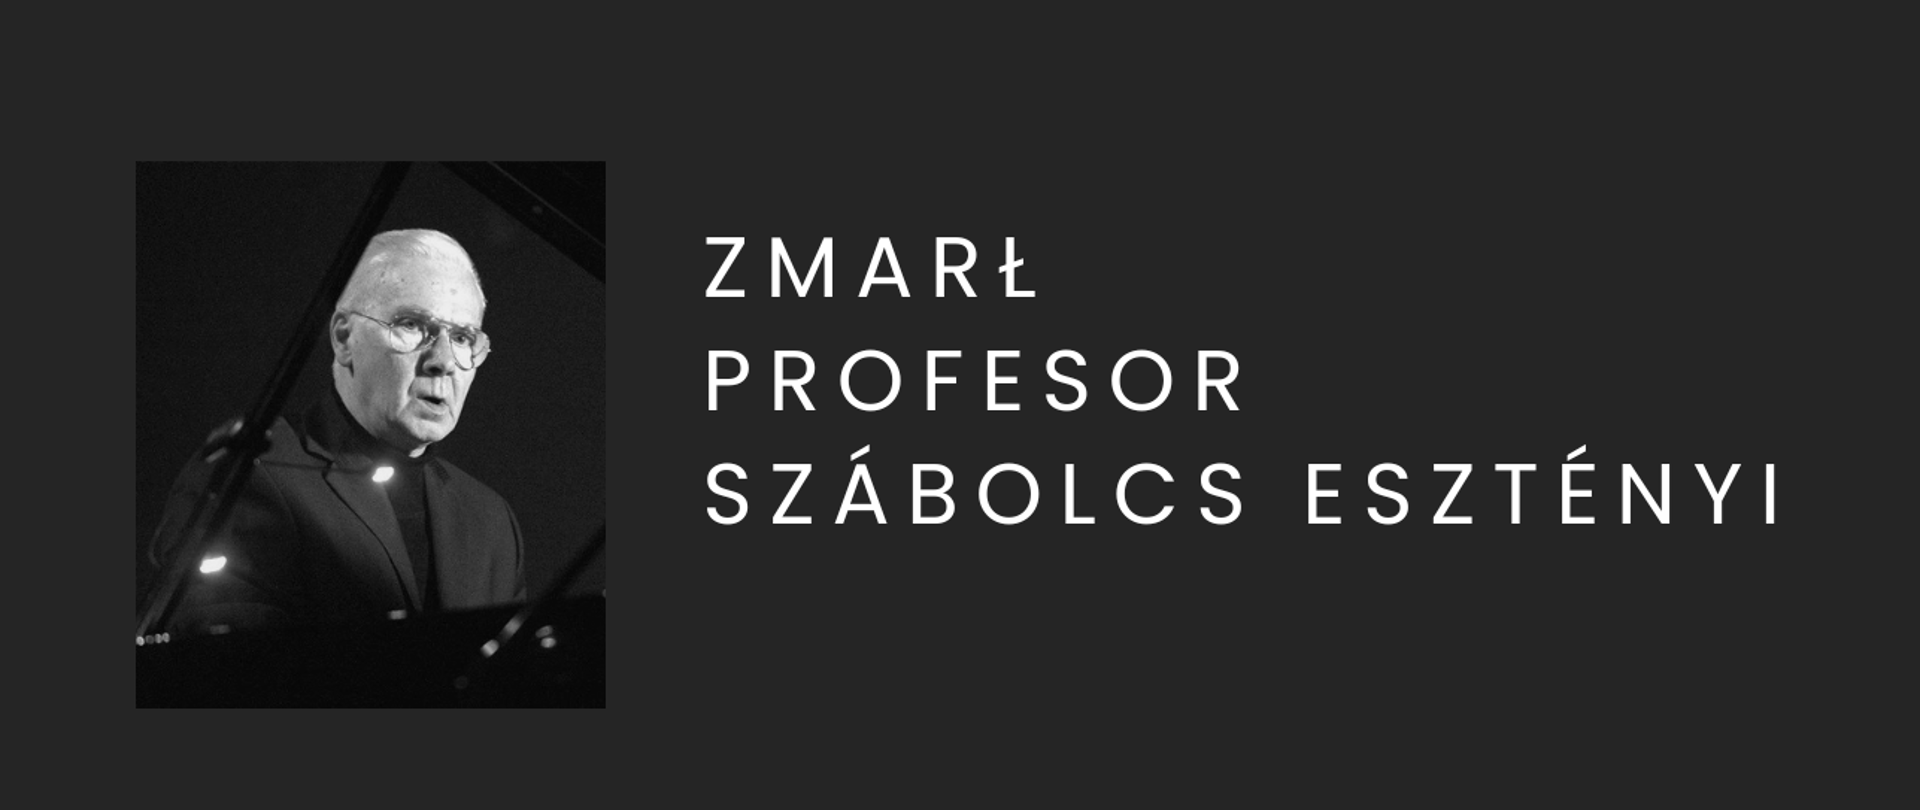 Baner w związku ze śmiercią prof. Esztenyi'ego biały napis na czarnym tle oraz zdjęcie zmarłego